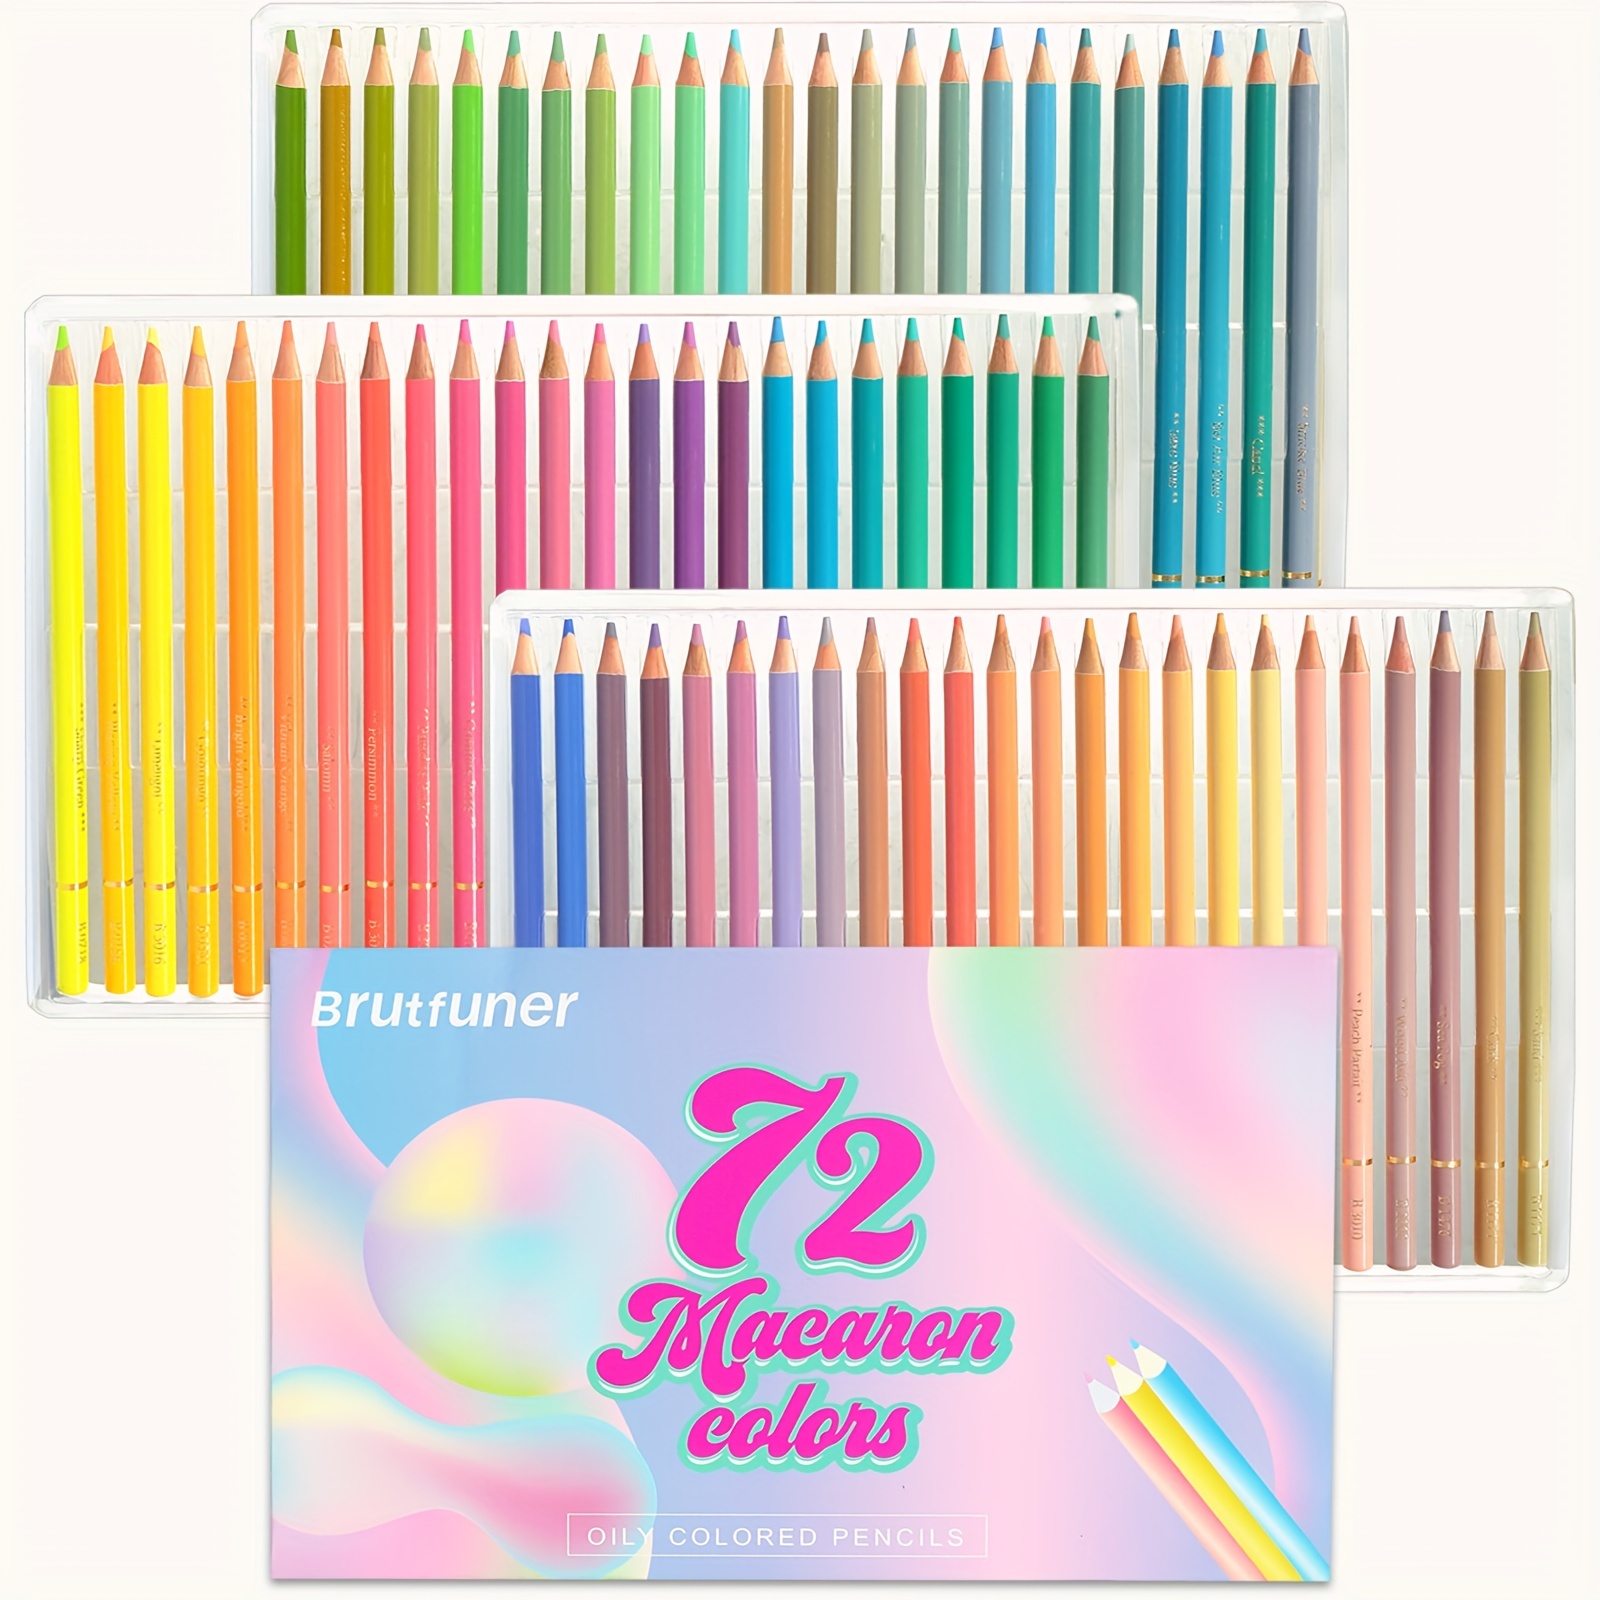 KALOUR Pro Pastel Chalk Colored Pencils,Set of 50 Colors,Color